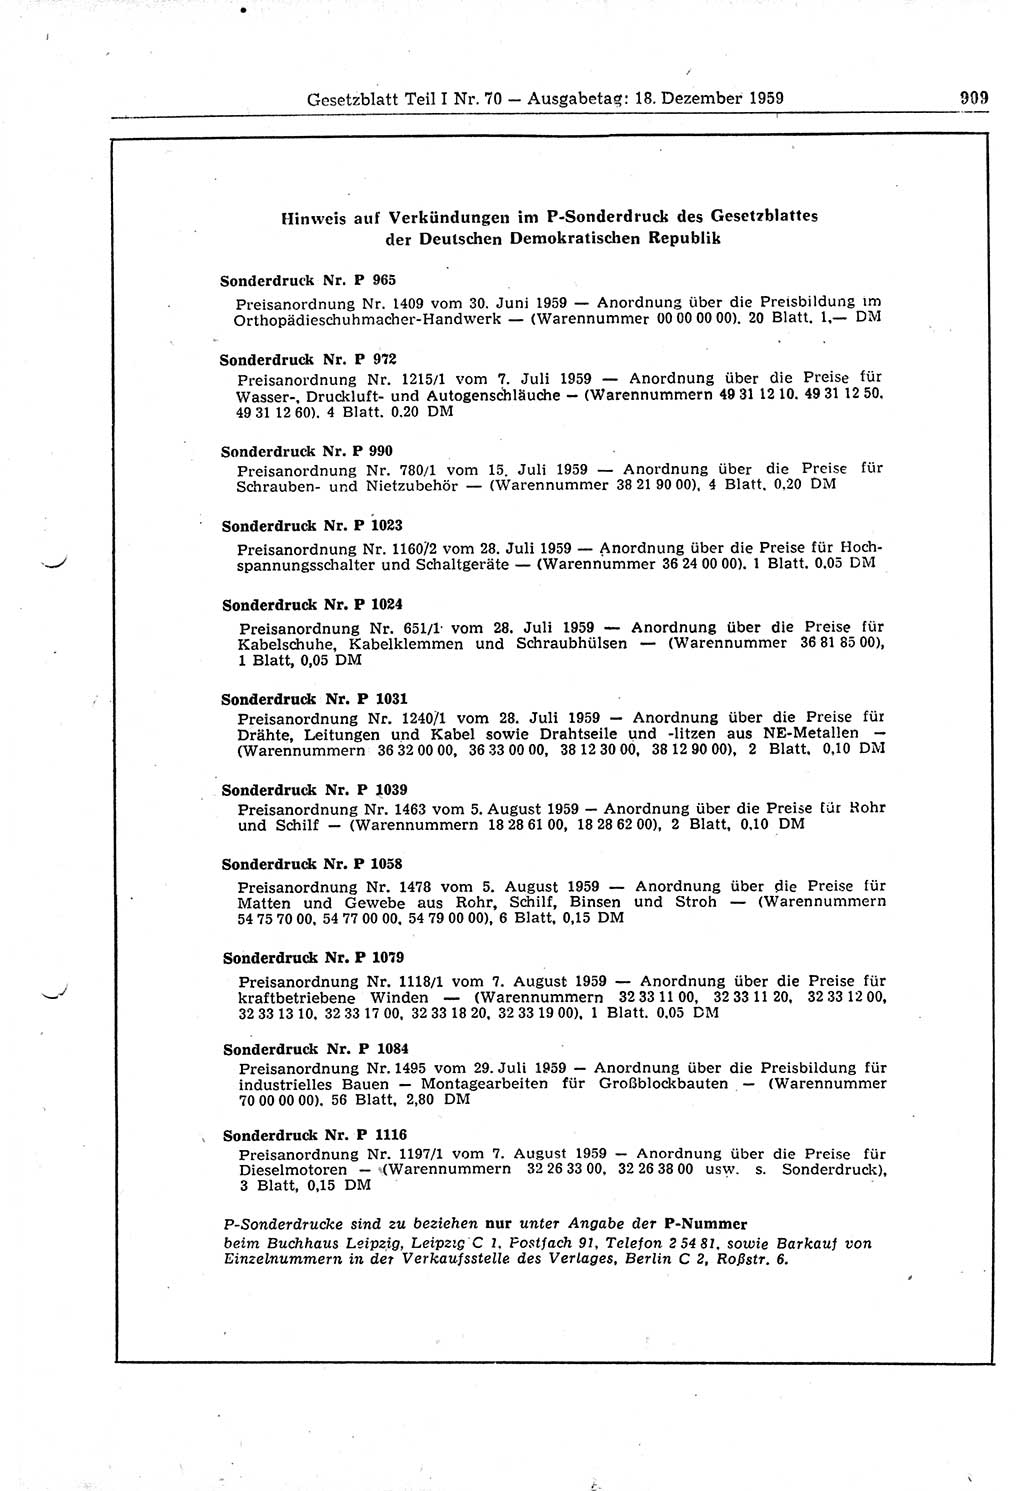 Gesetzblatt (GBl.) der Deutschen Demokratischen Republik (DDR) Teil Ⅰ 1959, Seite 909 (GBl. DDR Ⅰ 1959, S. 909)